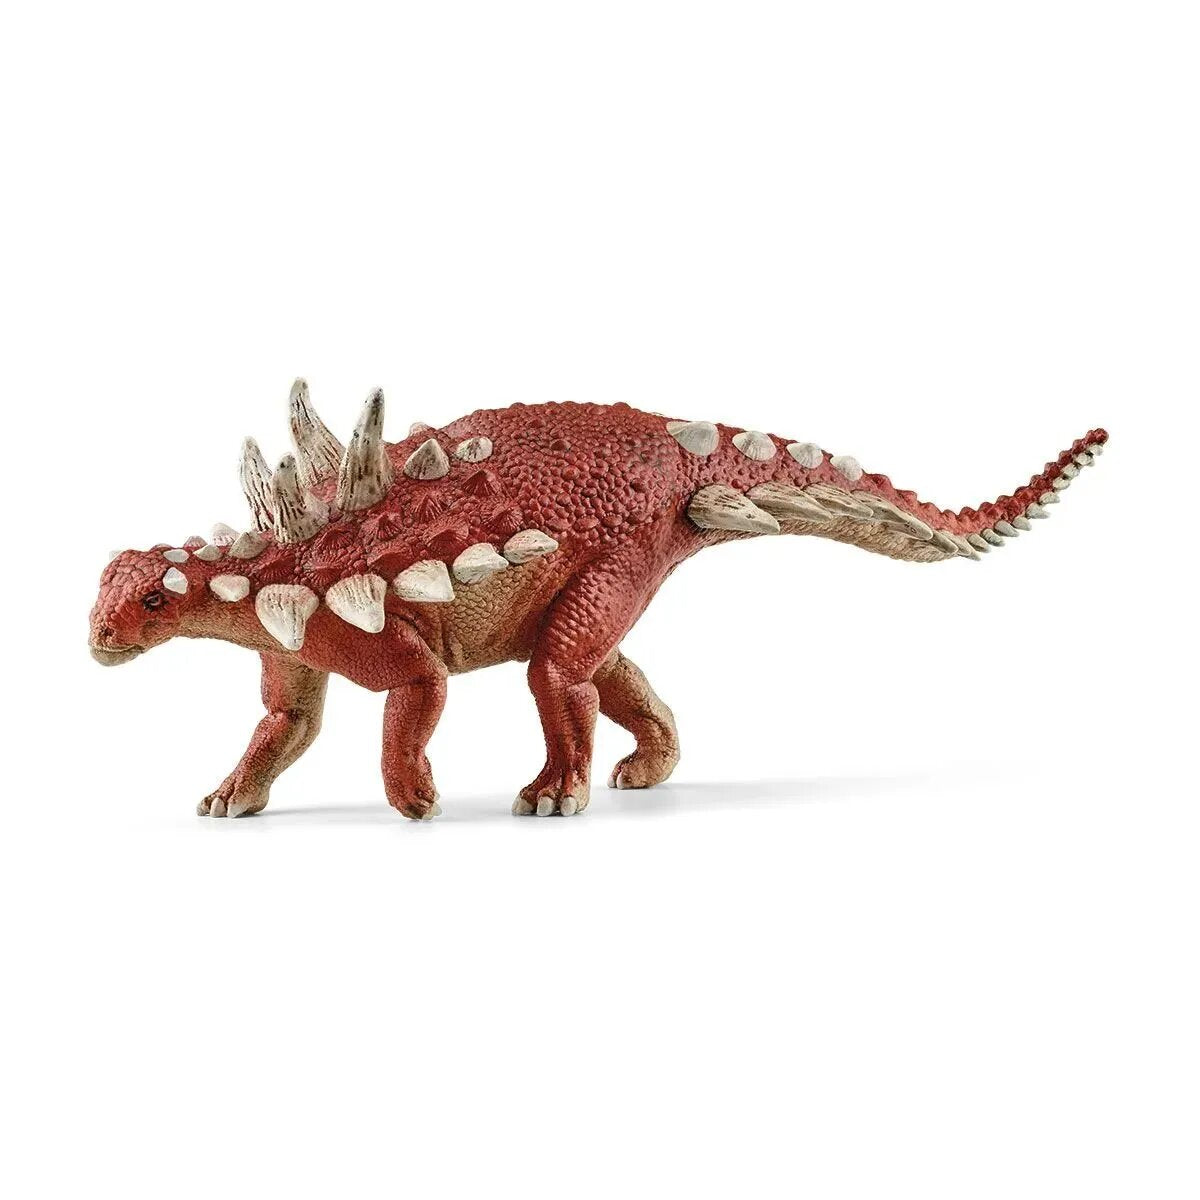 Schleich® 15036 Dinosaurs - Gastonia